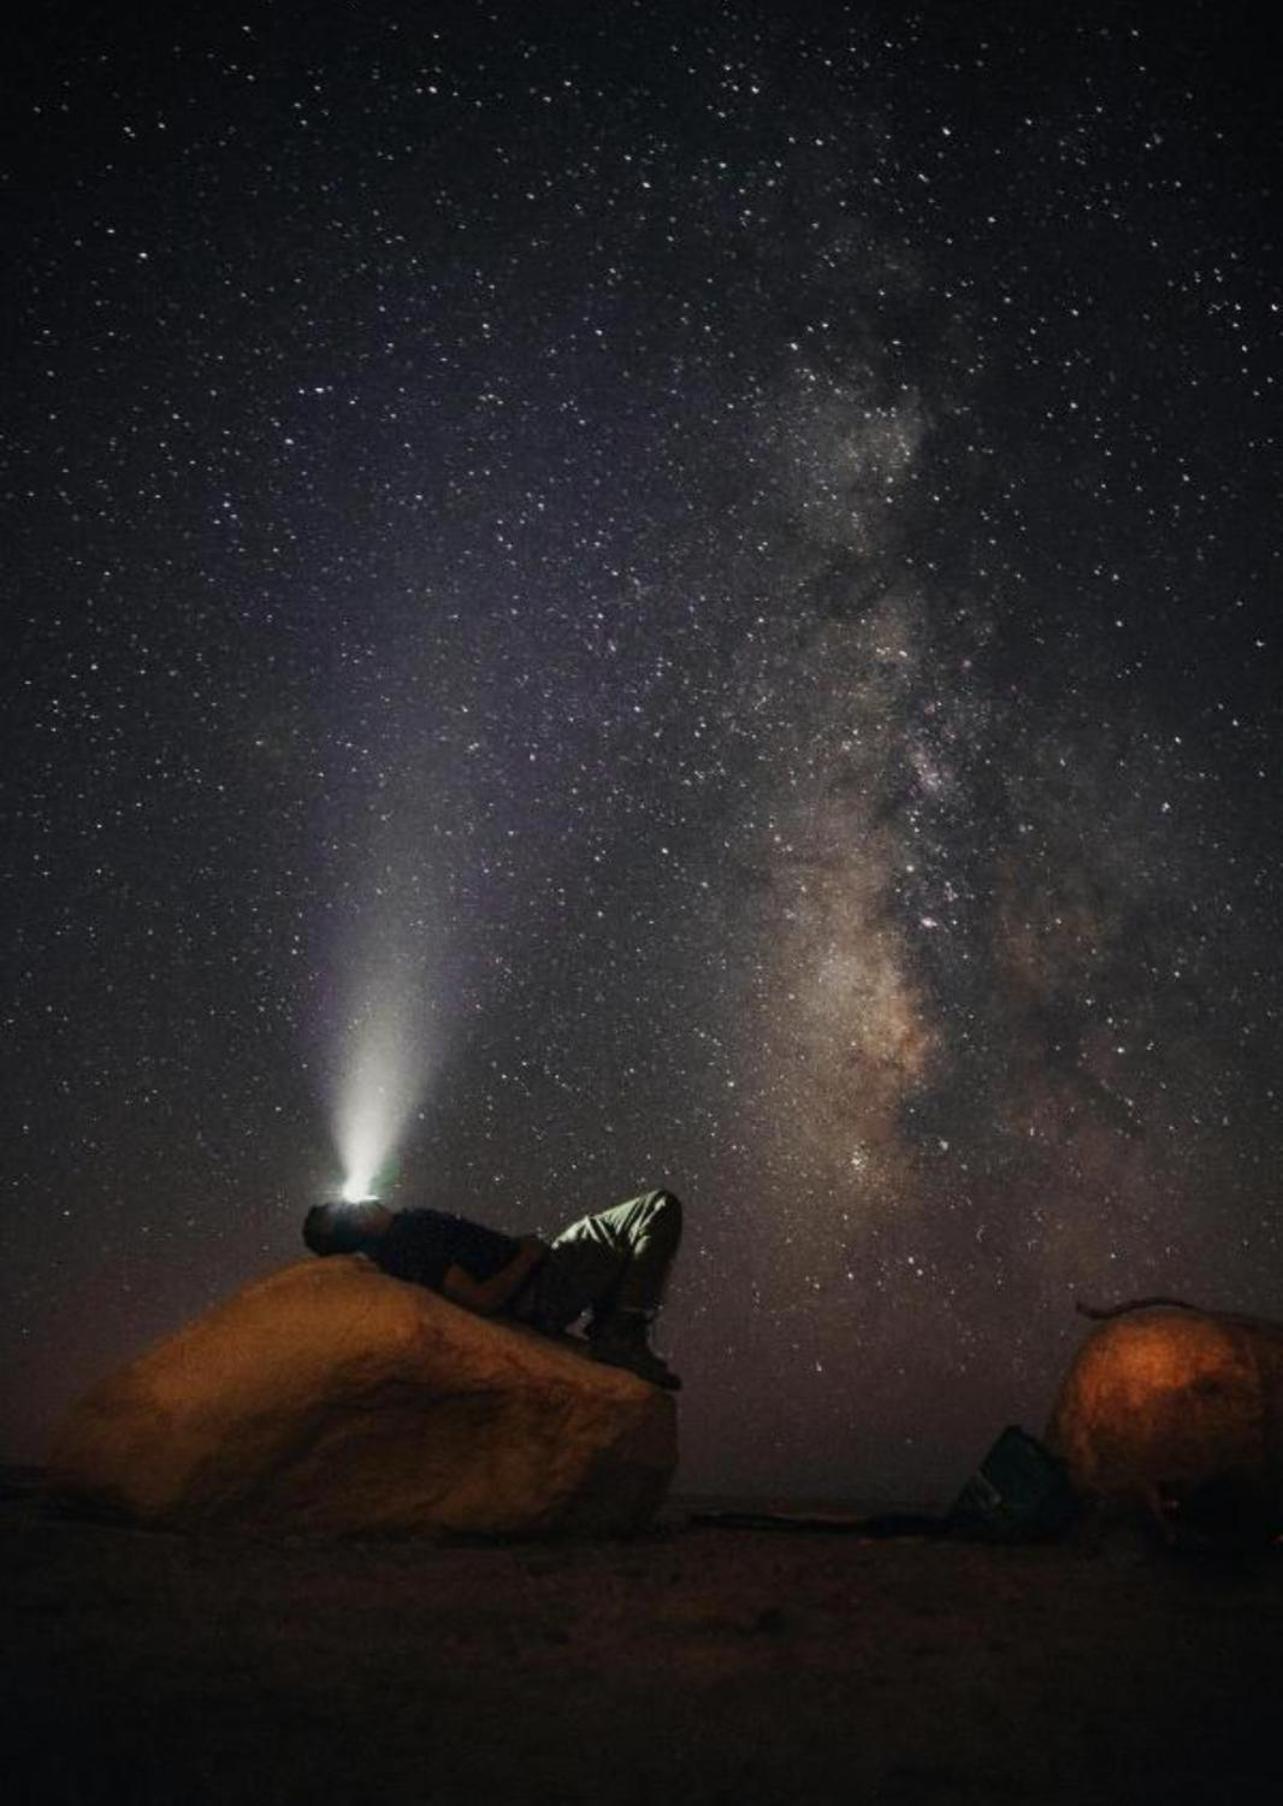 Wadi Rum Meteorite Camp Exterior foto